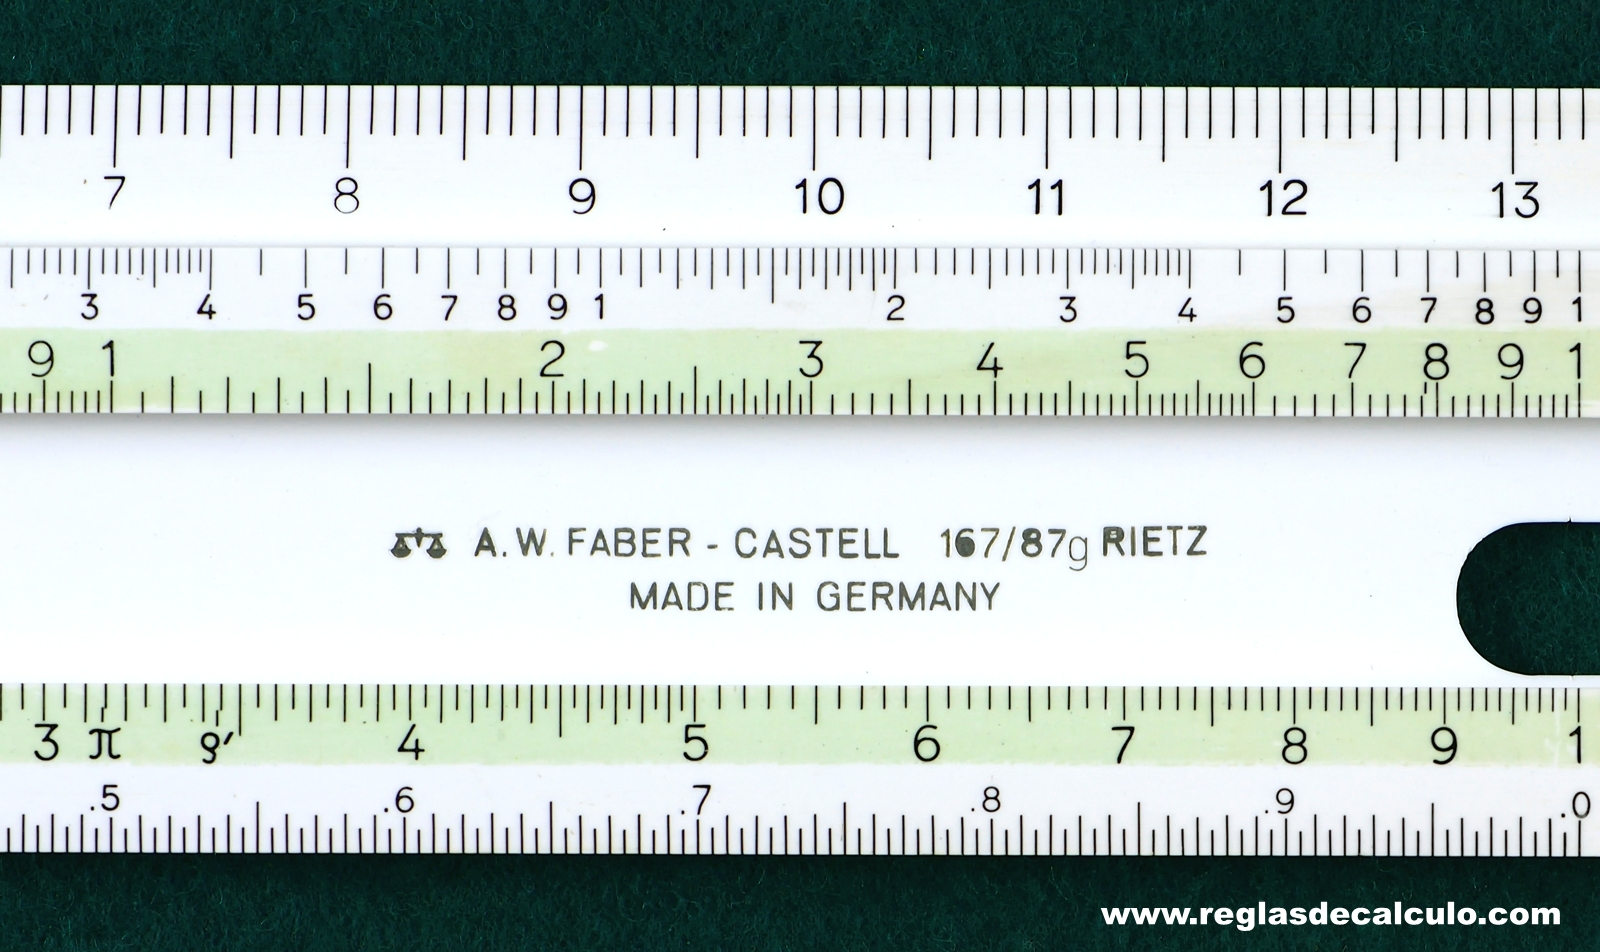 Faber Castell 167/87g Regla de Calculo Slide rule